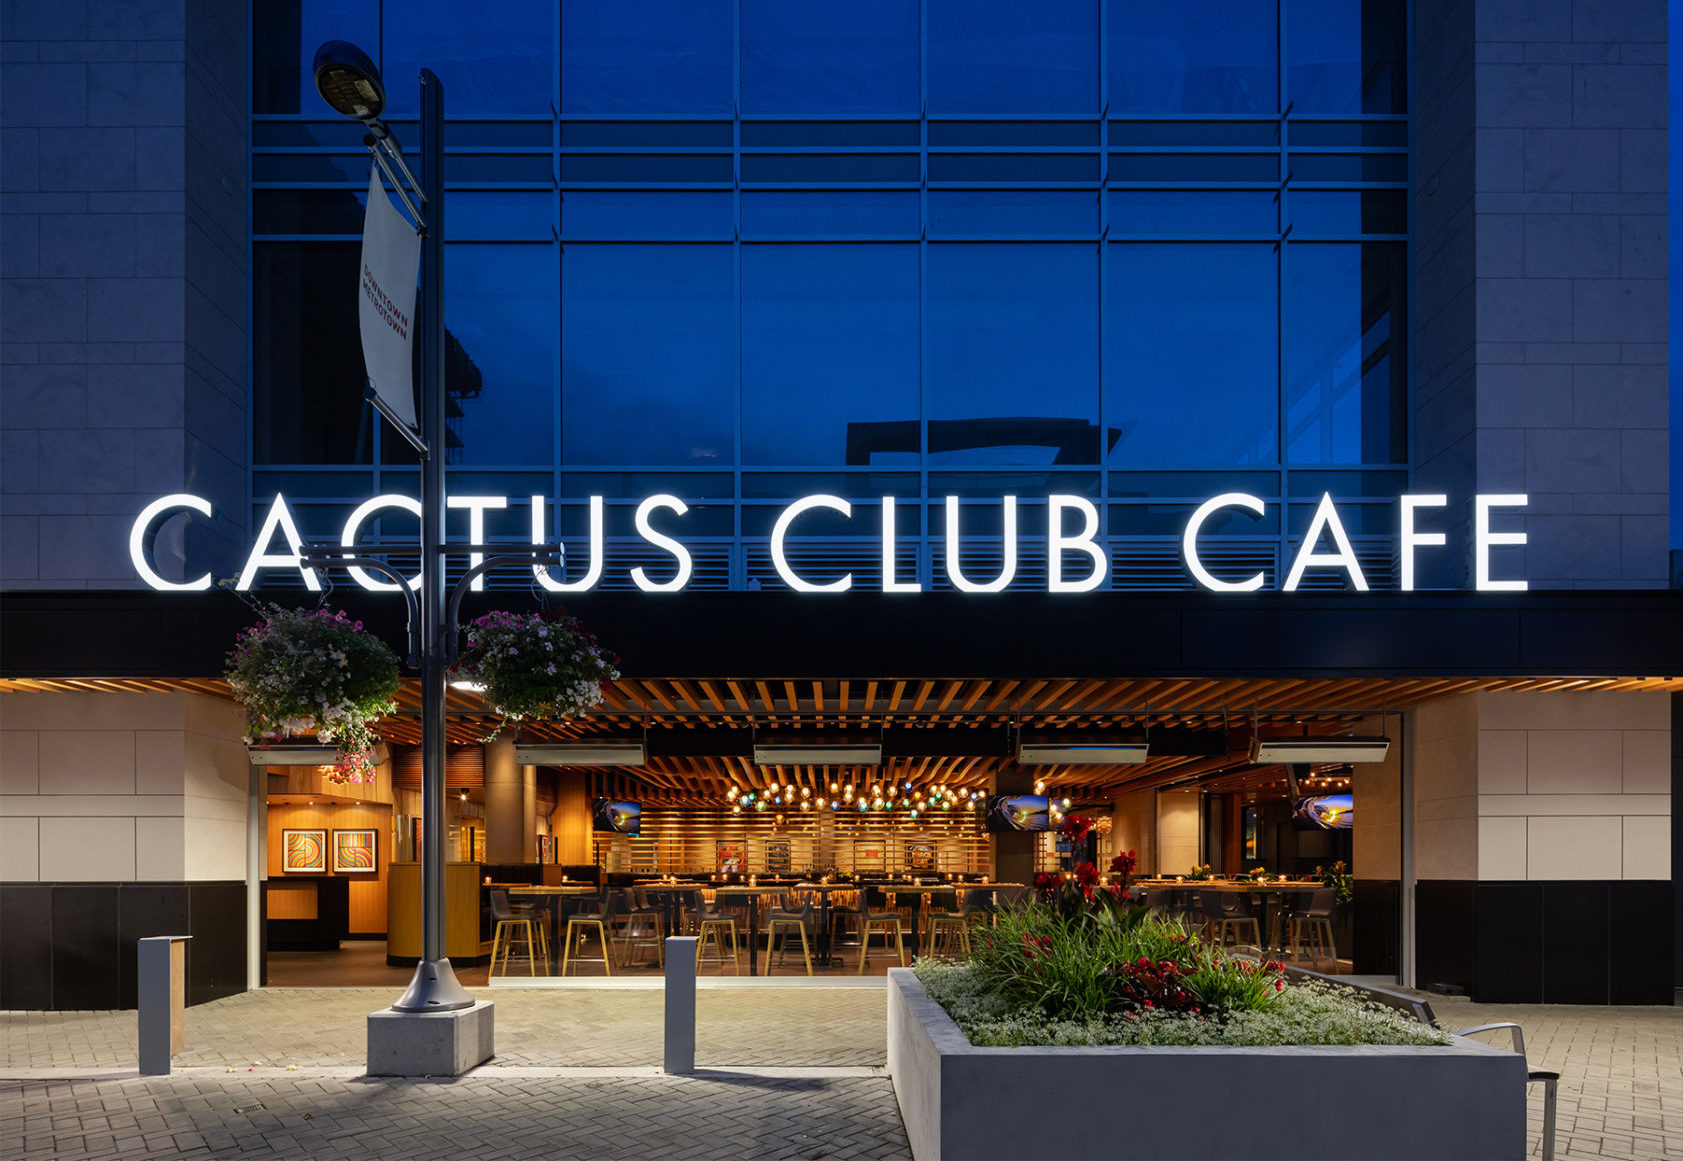 Cactus Club Café: Station Square is Now Complete - Assembledge+